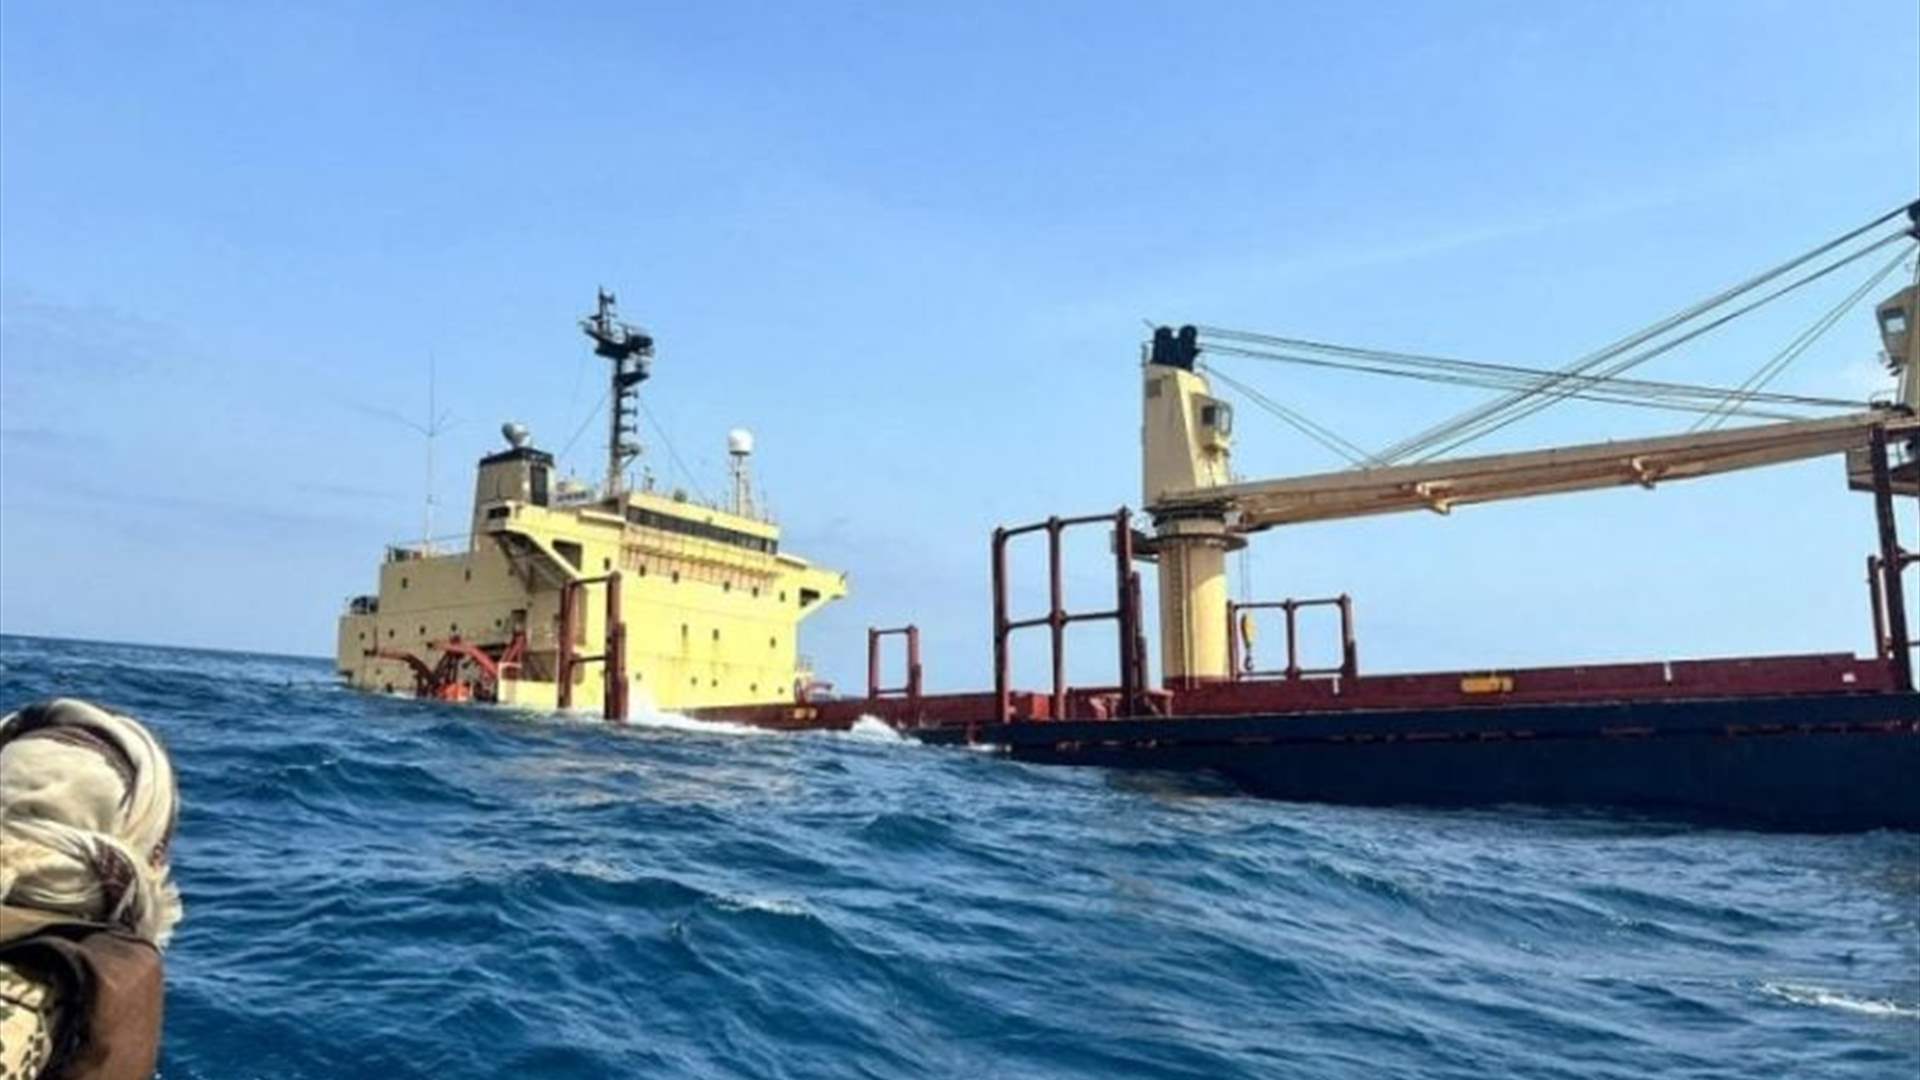 تصريح للسفن أصبح واجبًا قبل دخول المياه اليمنية